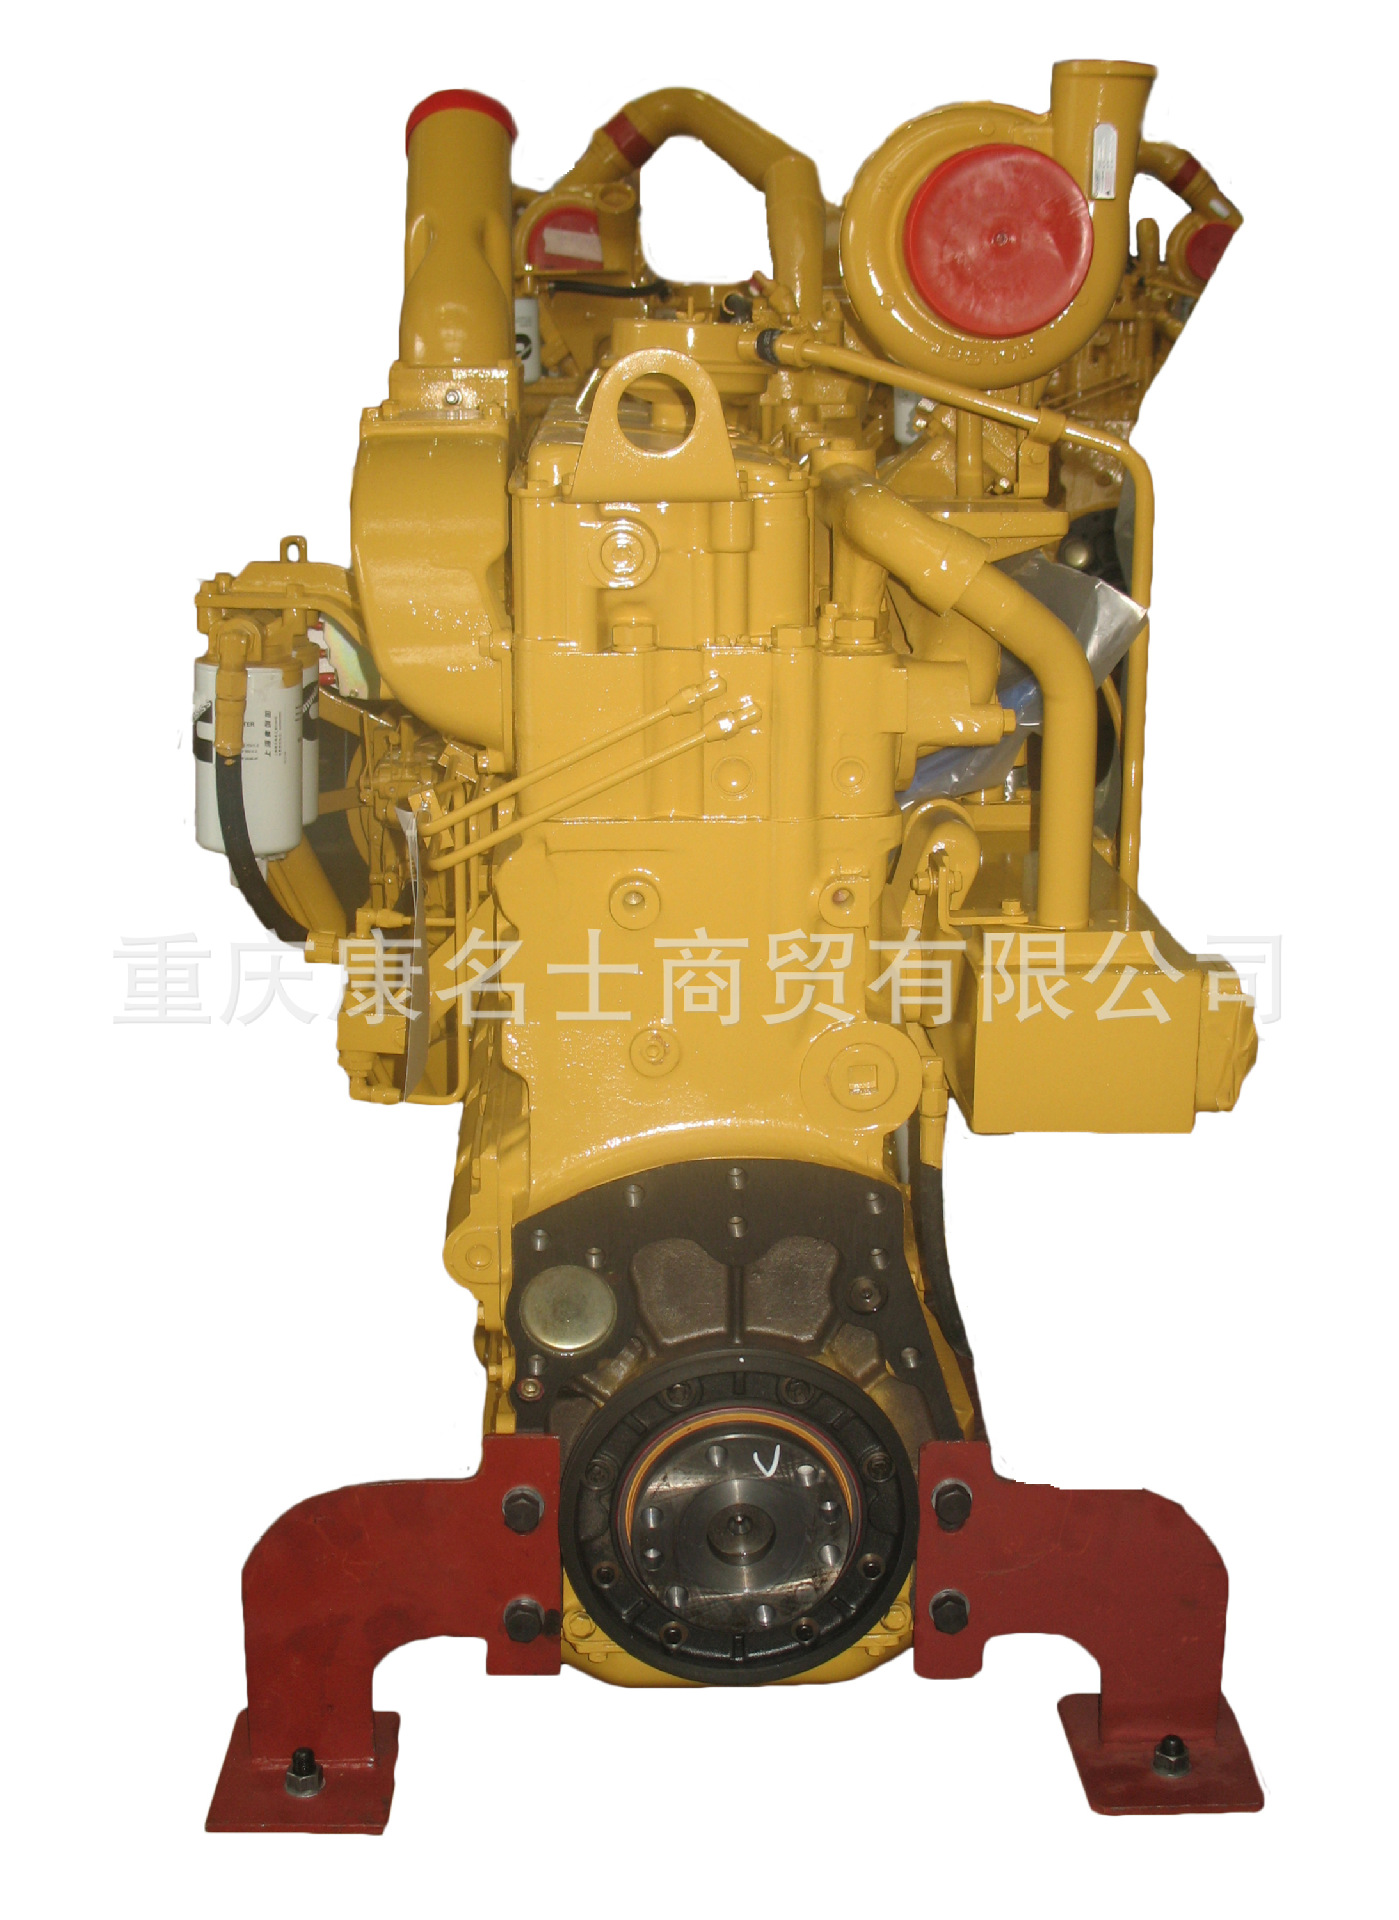 3284078康明斯油管支架KO-S6D102E-1-152发动机配件厂价优惠